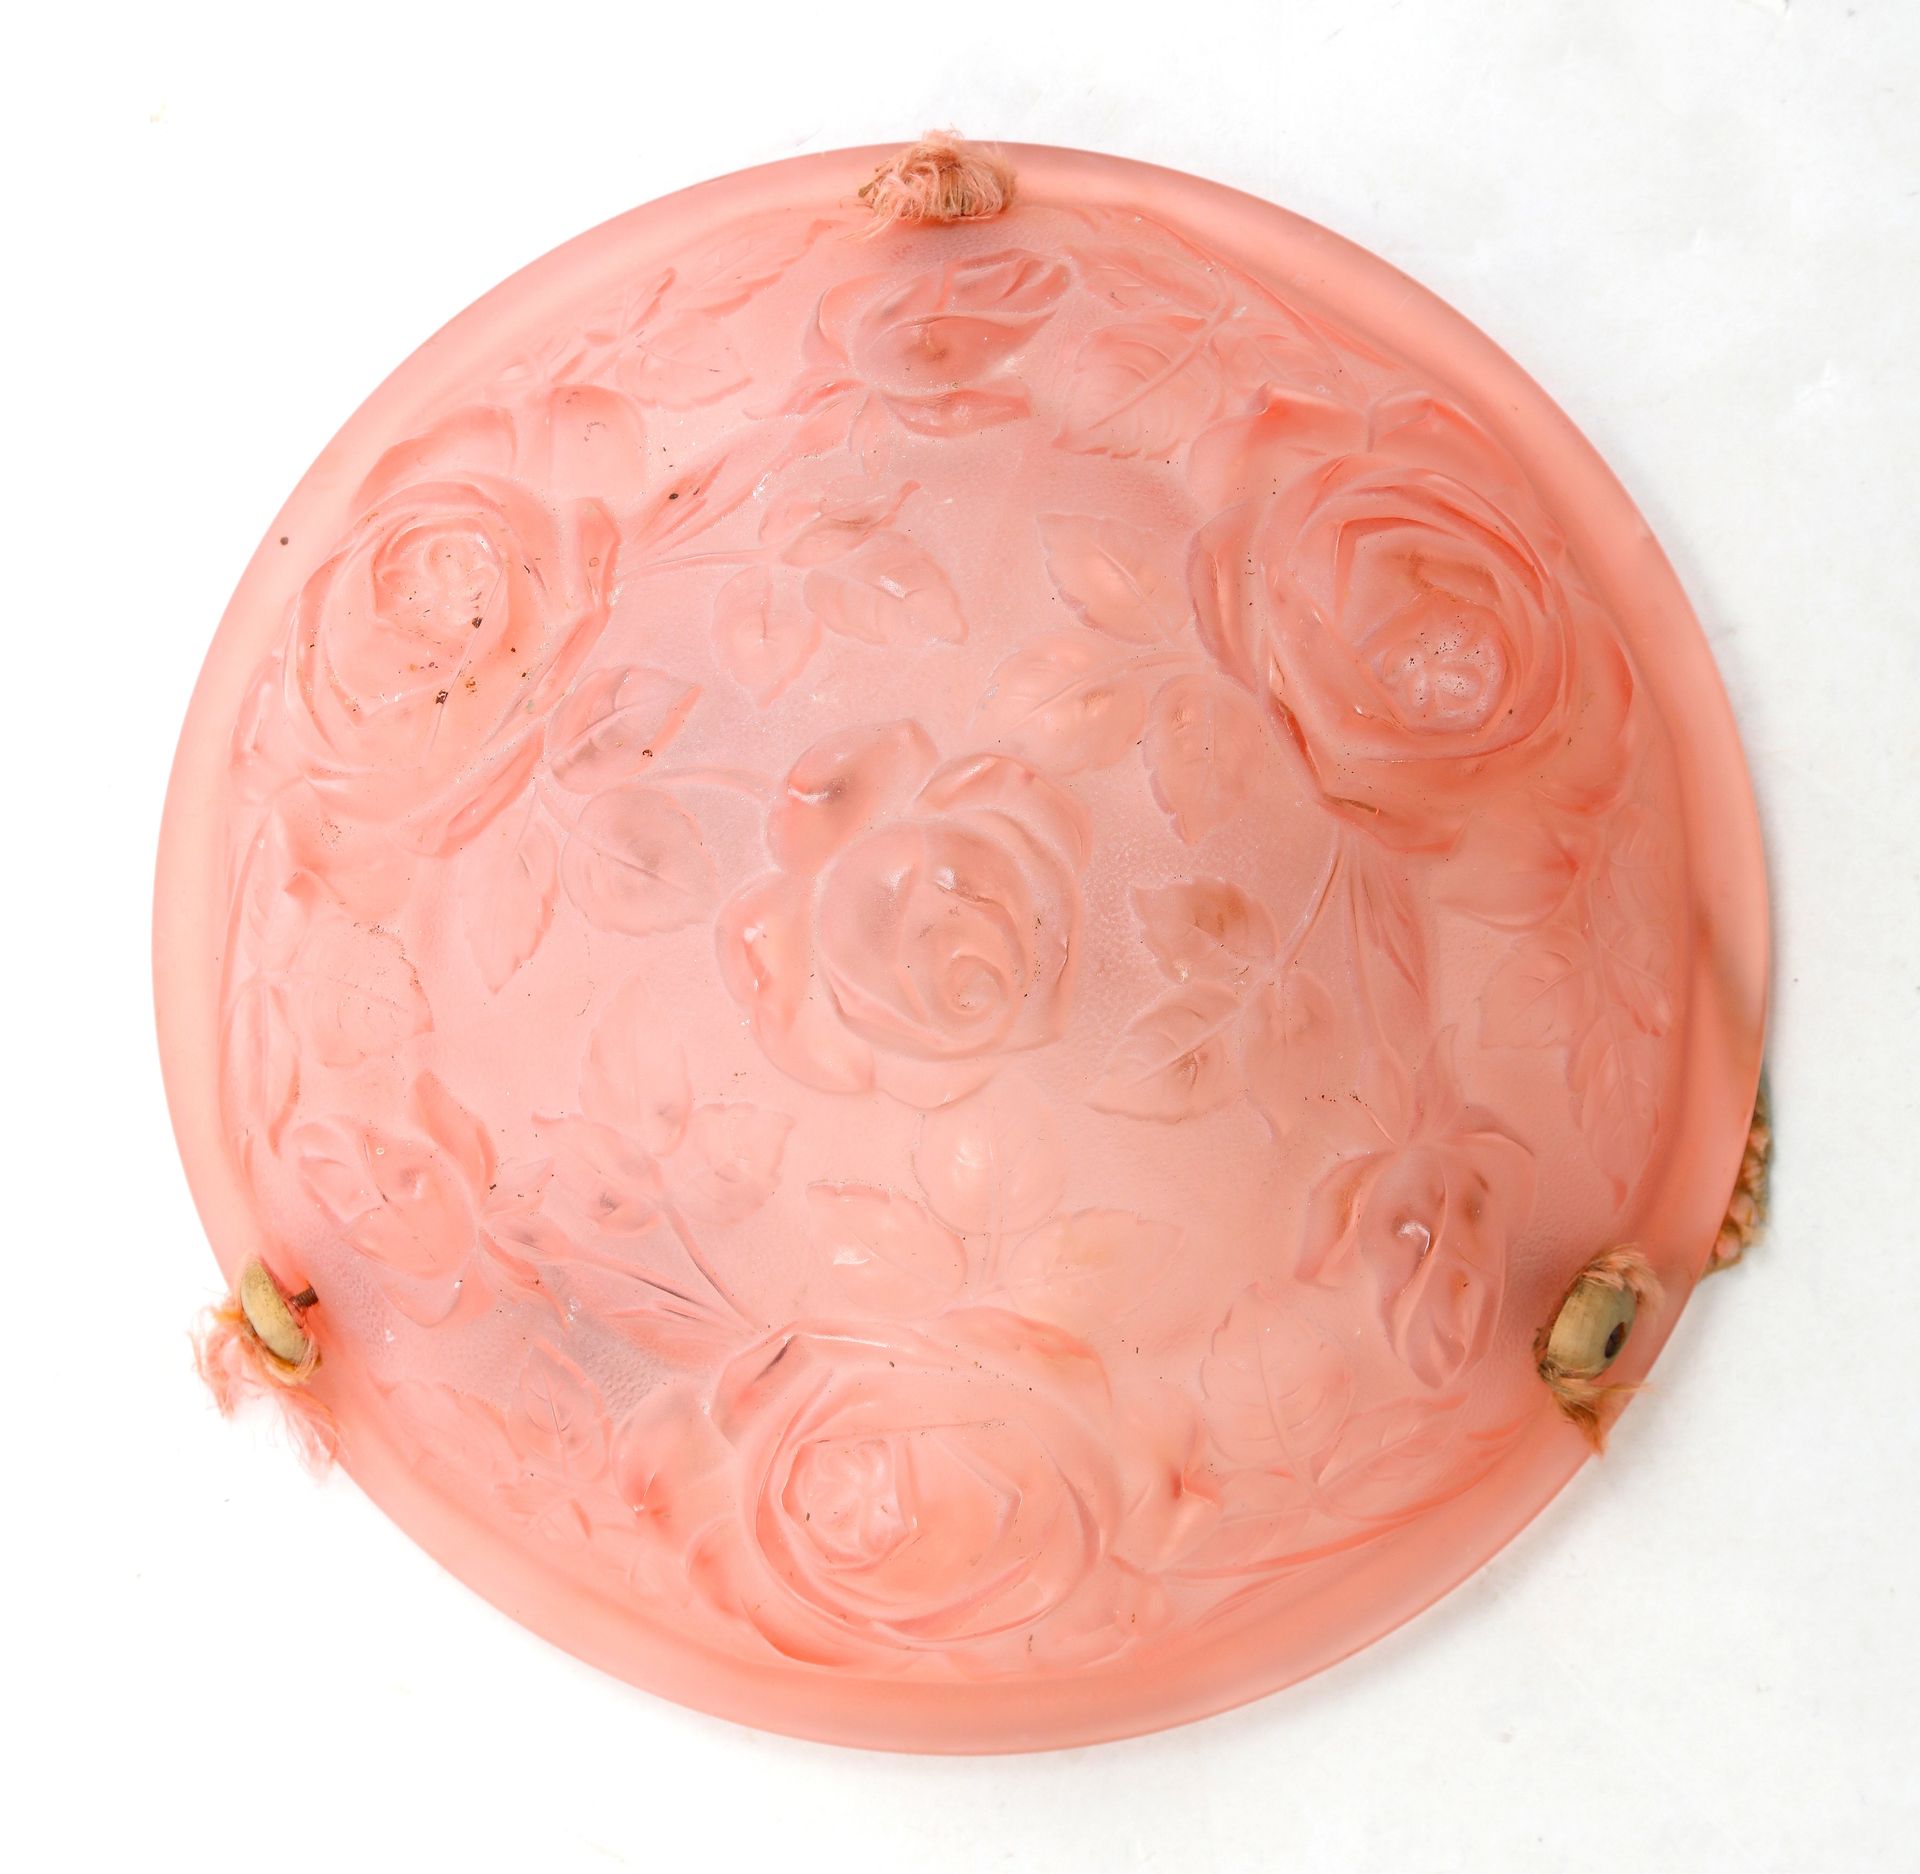 Null sospensione in vetro rosa pressato e modellato, decorazione floreale. 35X15